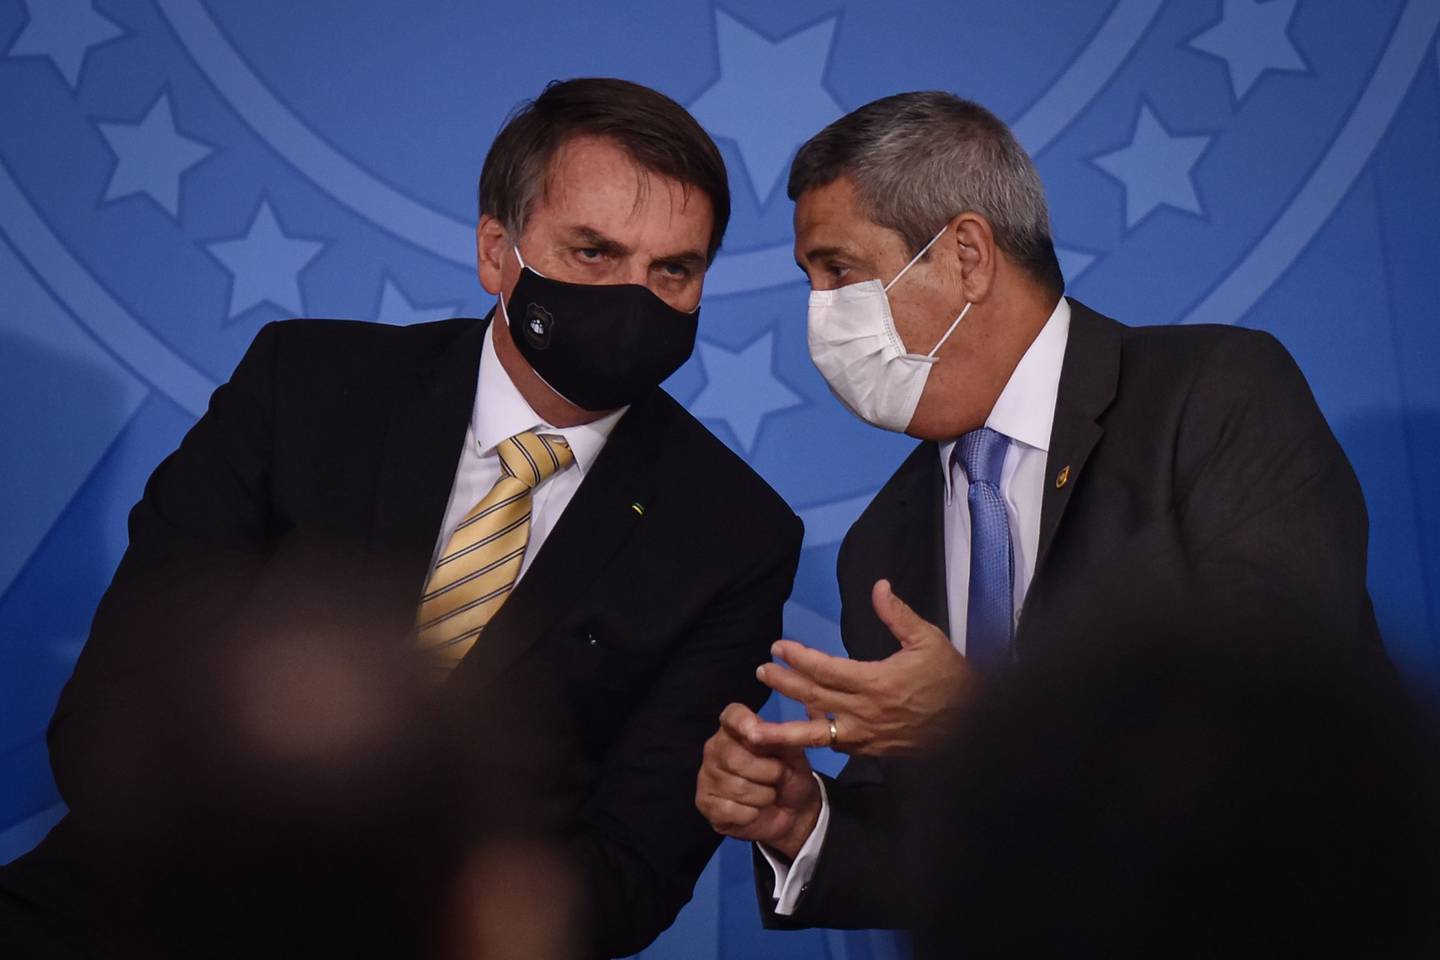 Jair Bolsonaro, presidente de Brasil, a la izquierda, y Walter Braga Netto, jefe de gabinete de Brasil, llevan una máscara protectora mientras hablan durante un evento en el Palacio de Planalto en Brasilia, Brasil, el viernes 15 de mayo de 2020.dfd